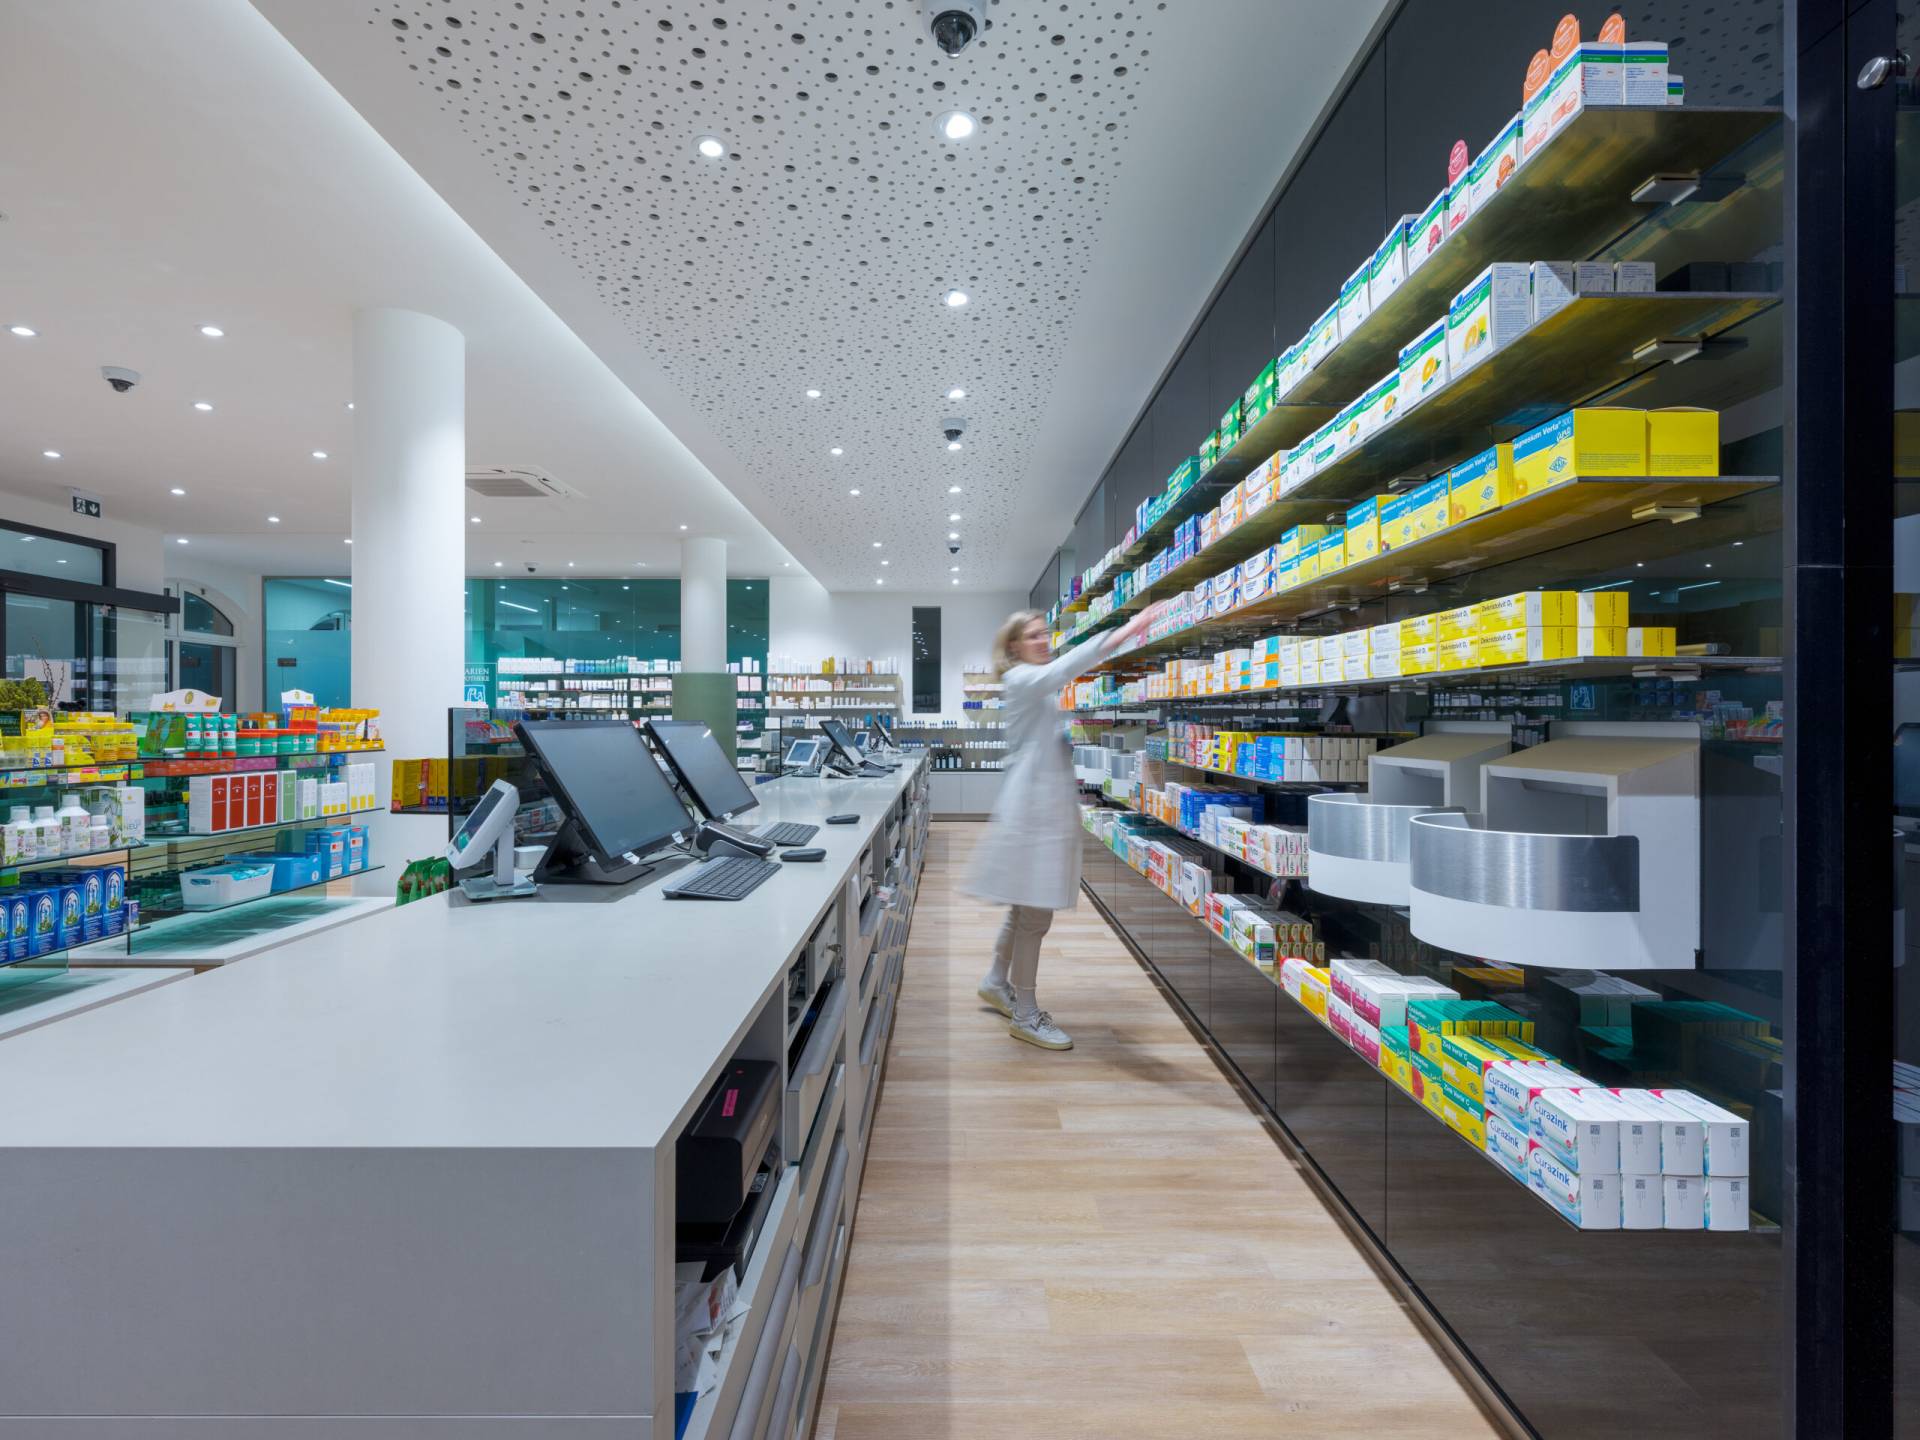 Marien-Apotheke in Moosburg, Innenarchitektur / Interior Design von Planquelle, Offizin und Regale mit Waren und Apothekerin beim Einräumen